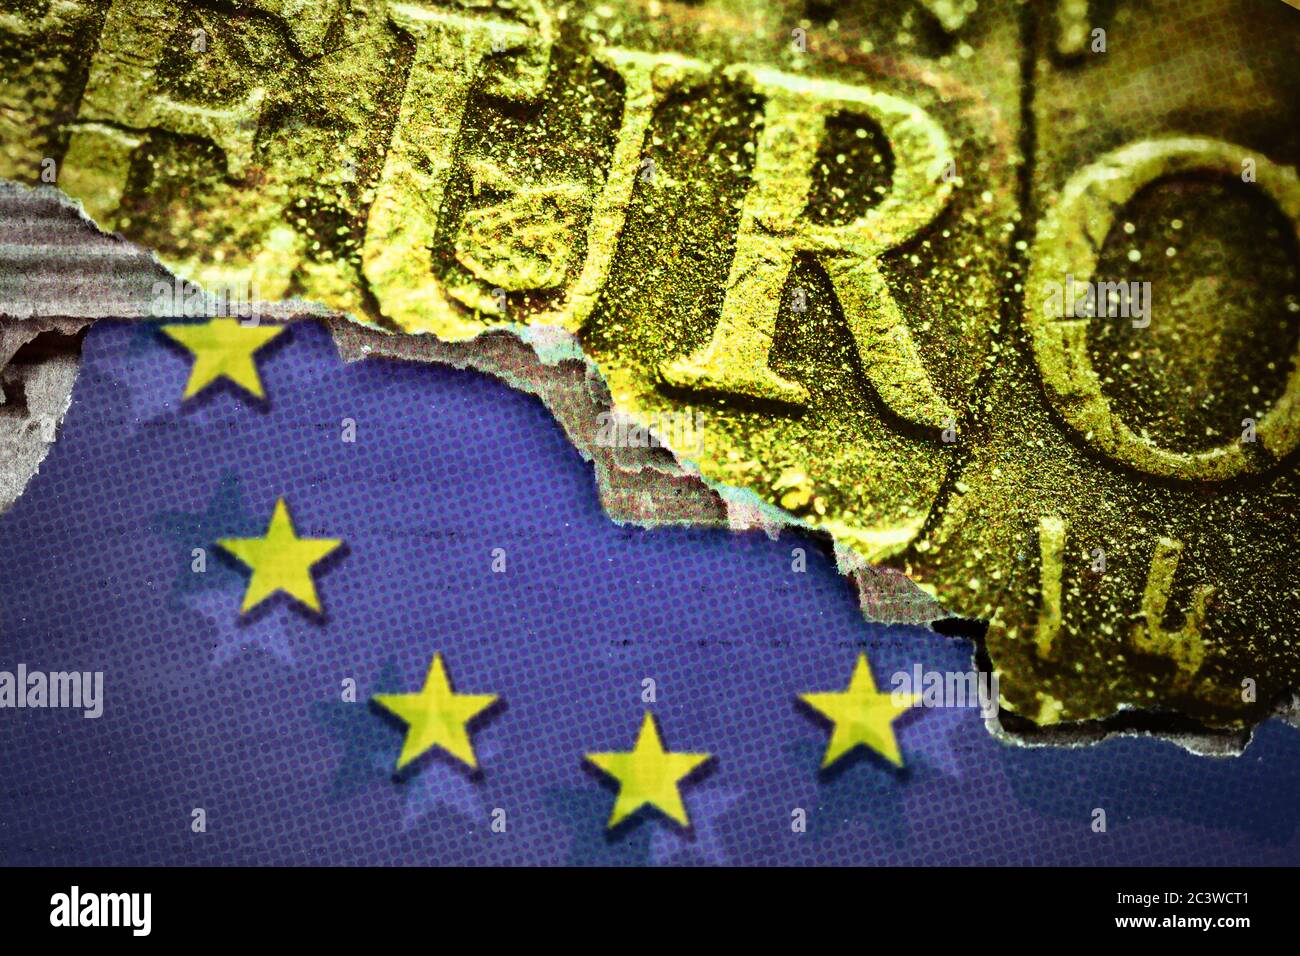 FOTOMONTAGE, EU-Flagge und Euro-Schriftzug auf einer Münze, Europäischer Wiederaufbaufonds, FOTOMONTAGE, EU-Fahne und Euro-Schriftzug auf einer Münze, EU-wieder Stockfoto